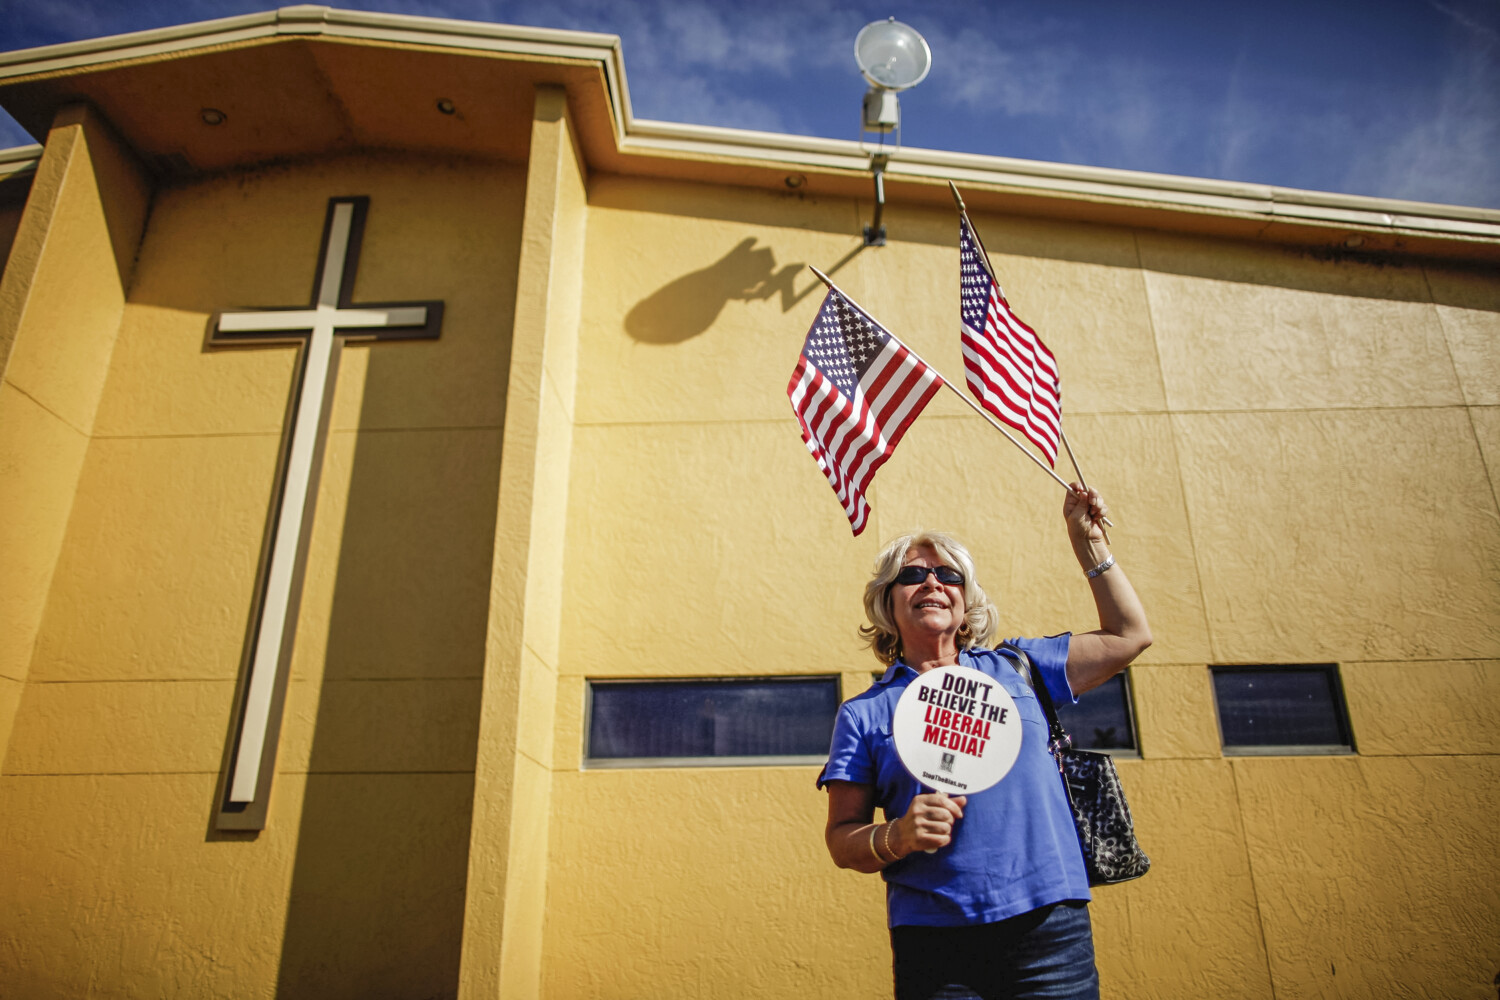 Una sostenitrice si trova all'esterno della chiesa evangelica Centro de la Familia a Orlando, in Florida, il 28 gennaio 2012. (Chip Somodevilla/Getty Images)